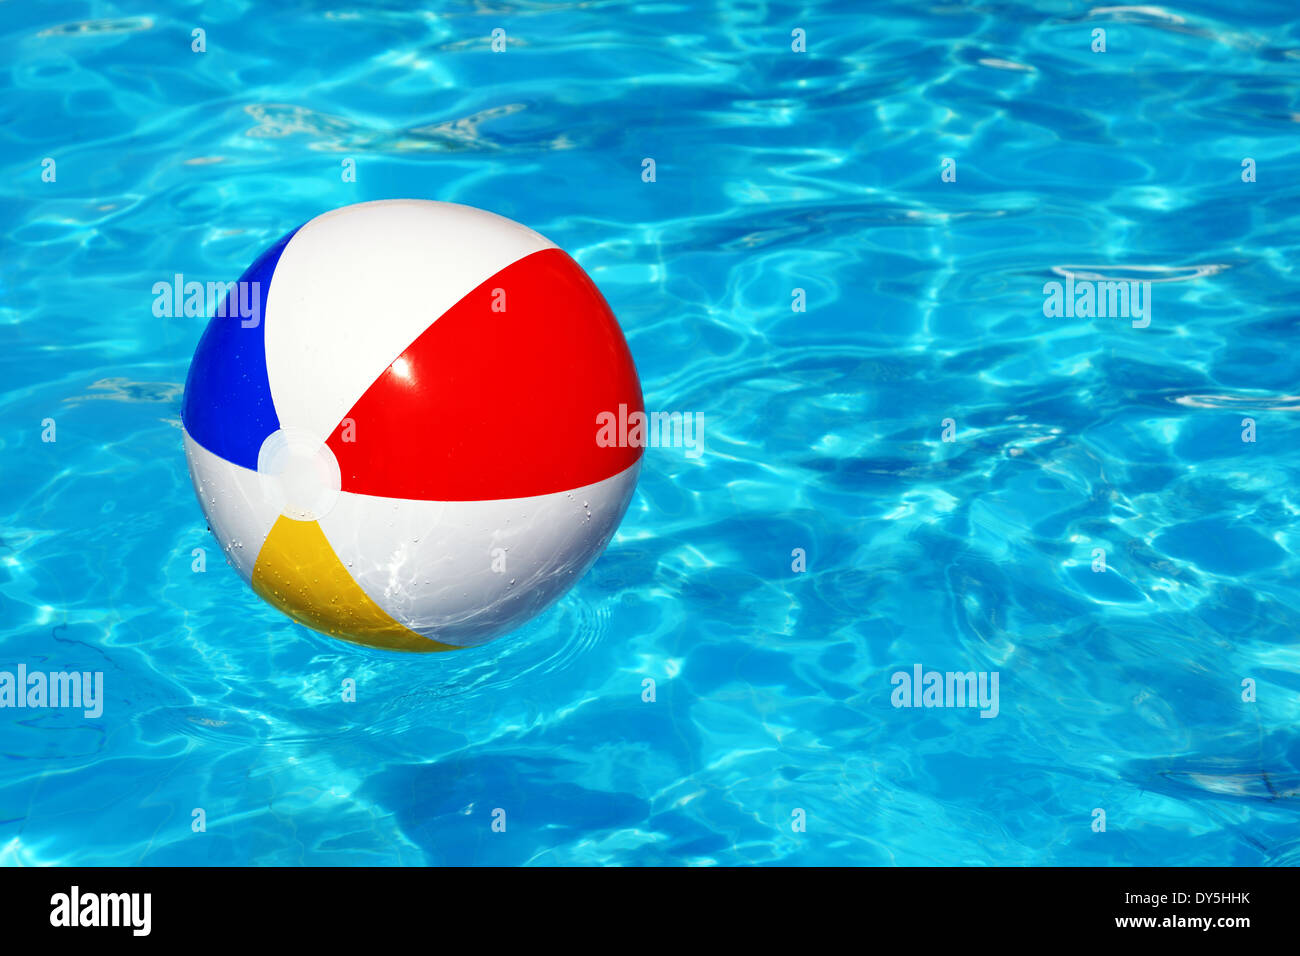 Wasserball im pool Stockfotografie - Alamy